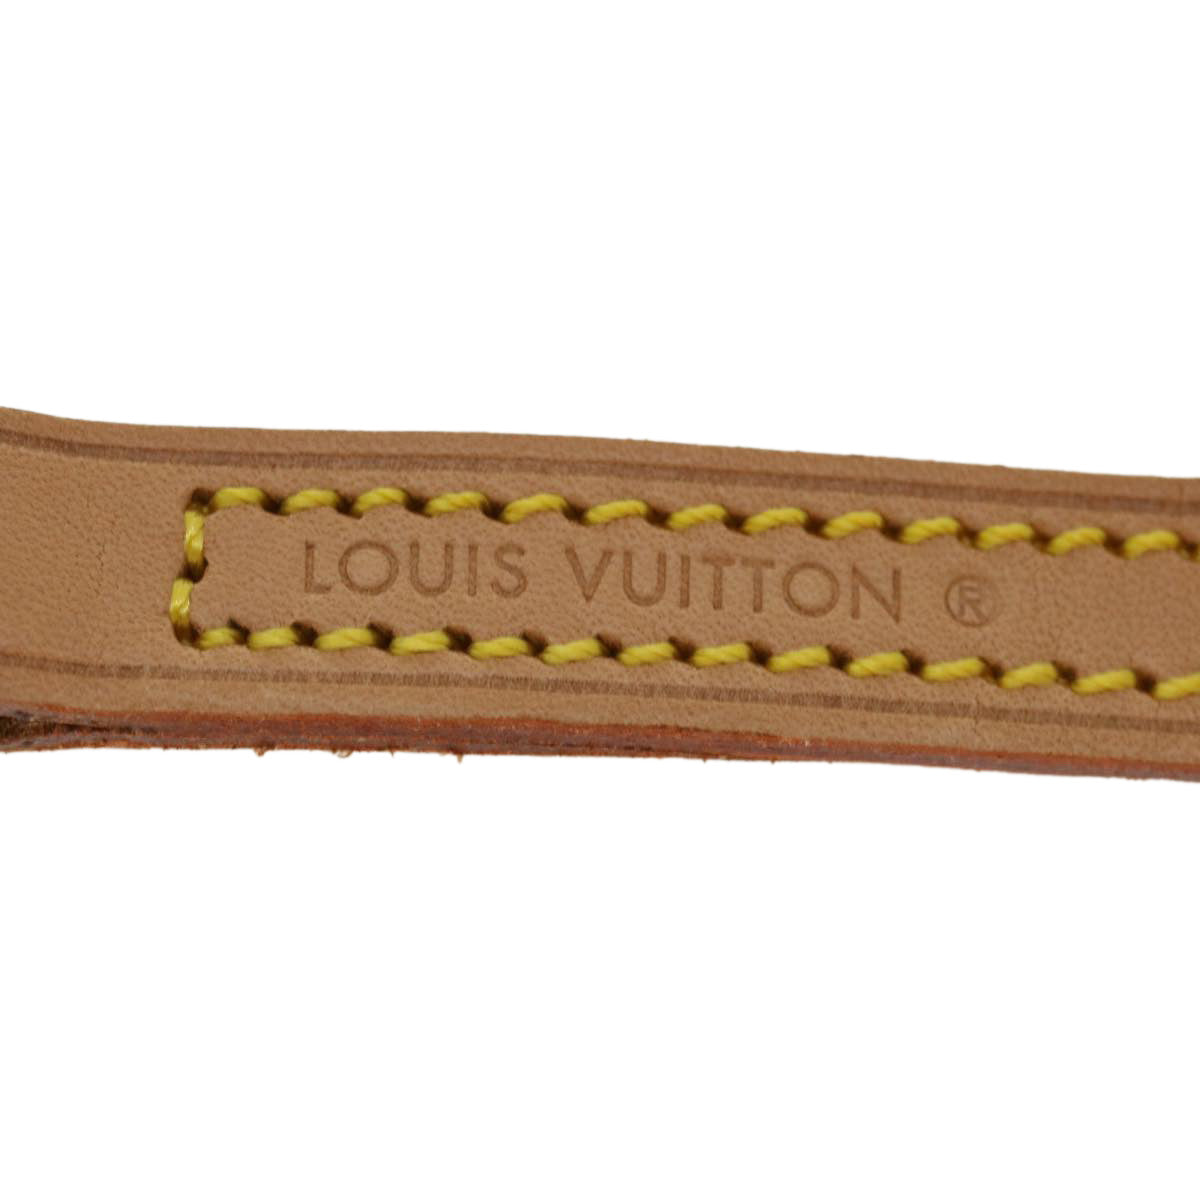 LOUIS VUITTON Shoulder Strap Leather 45.3"" Beige LV Auth ar8893